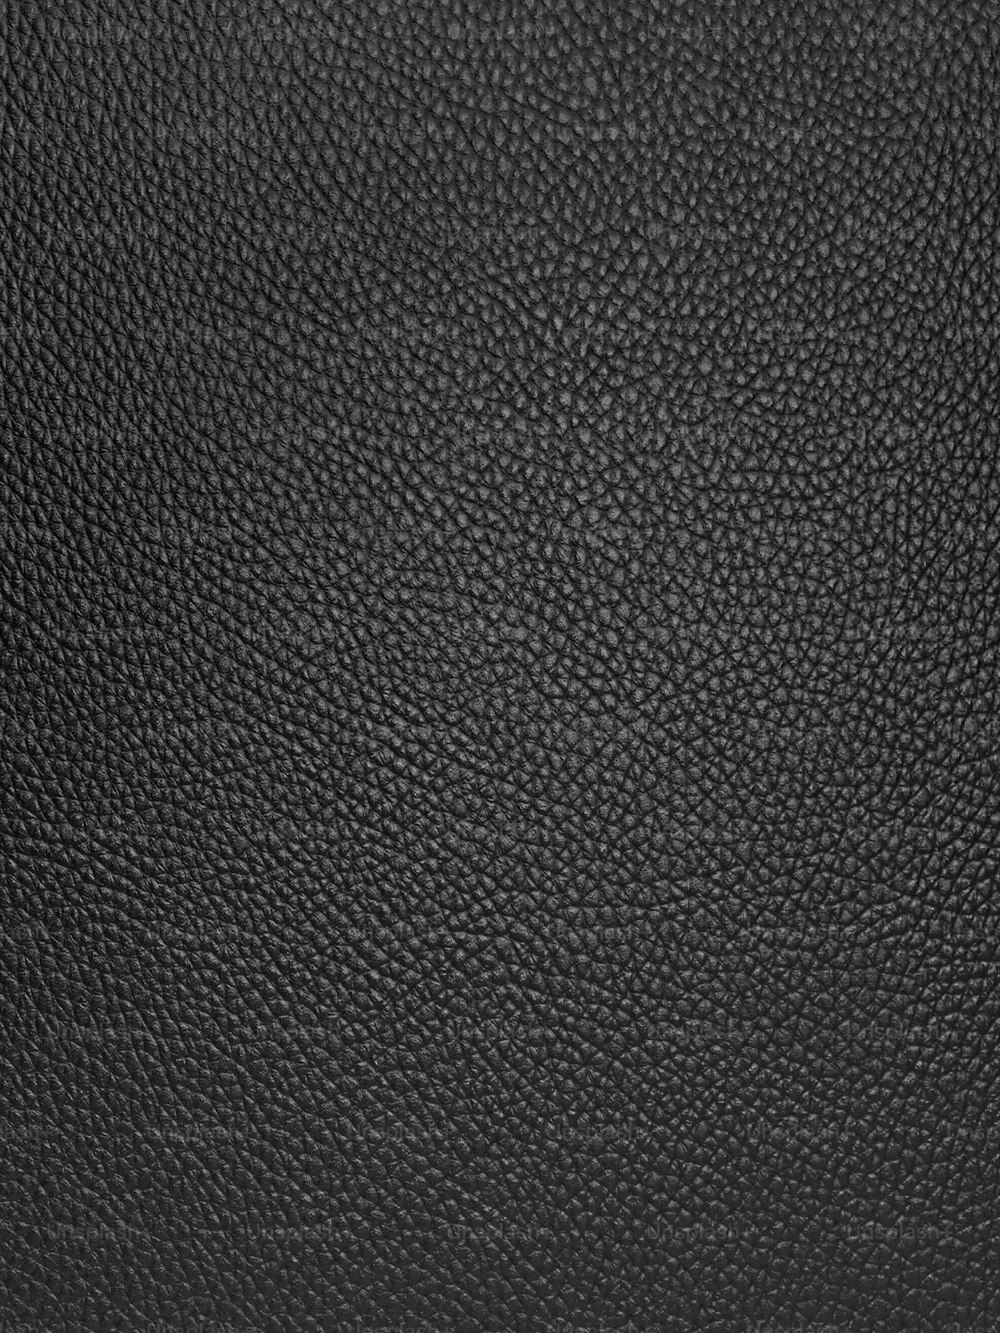 Gros plan d’une texture de cuir noir